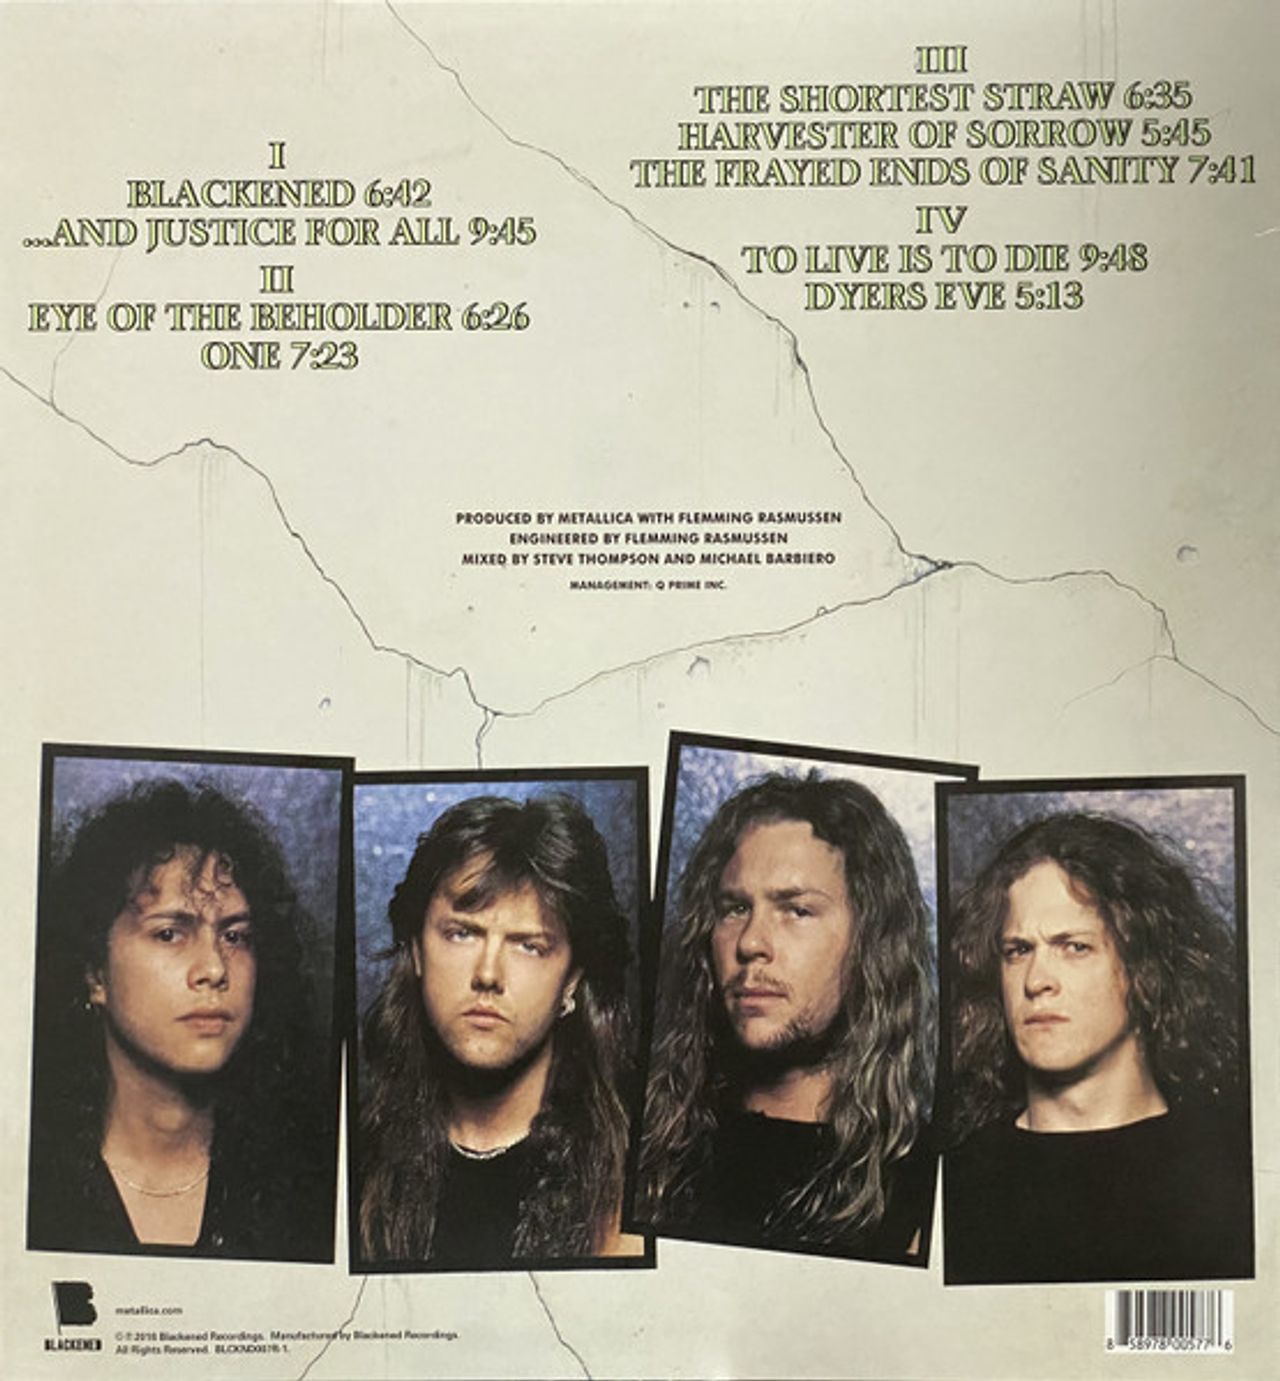 MetallicaAnd Justice For All - Remastered - Sealed US 2-LP vinyl set